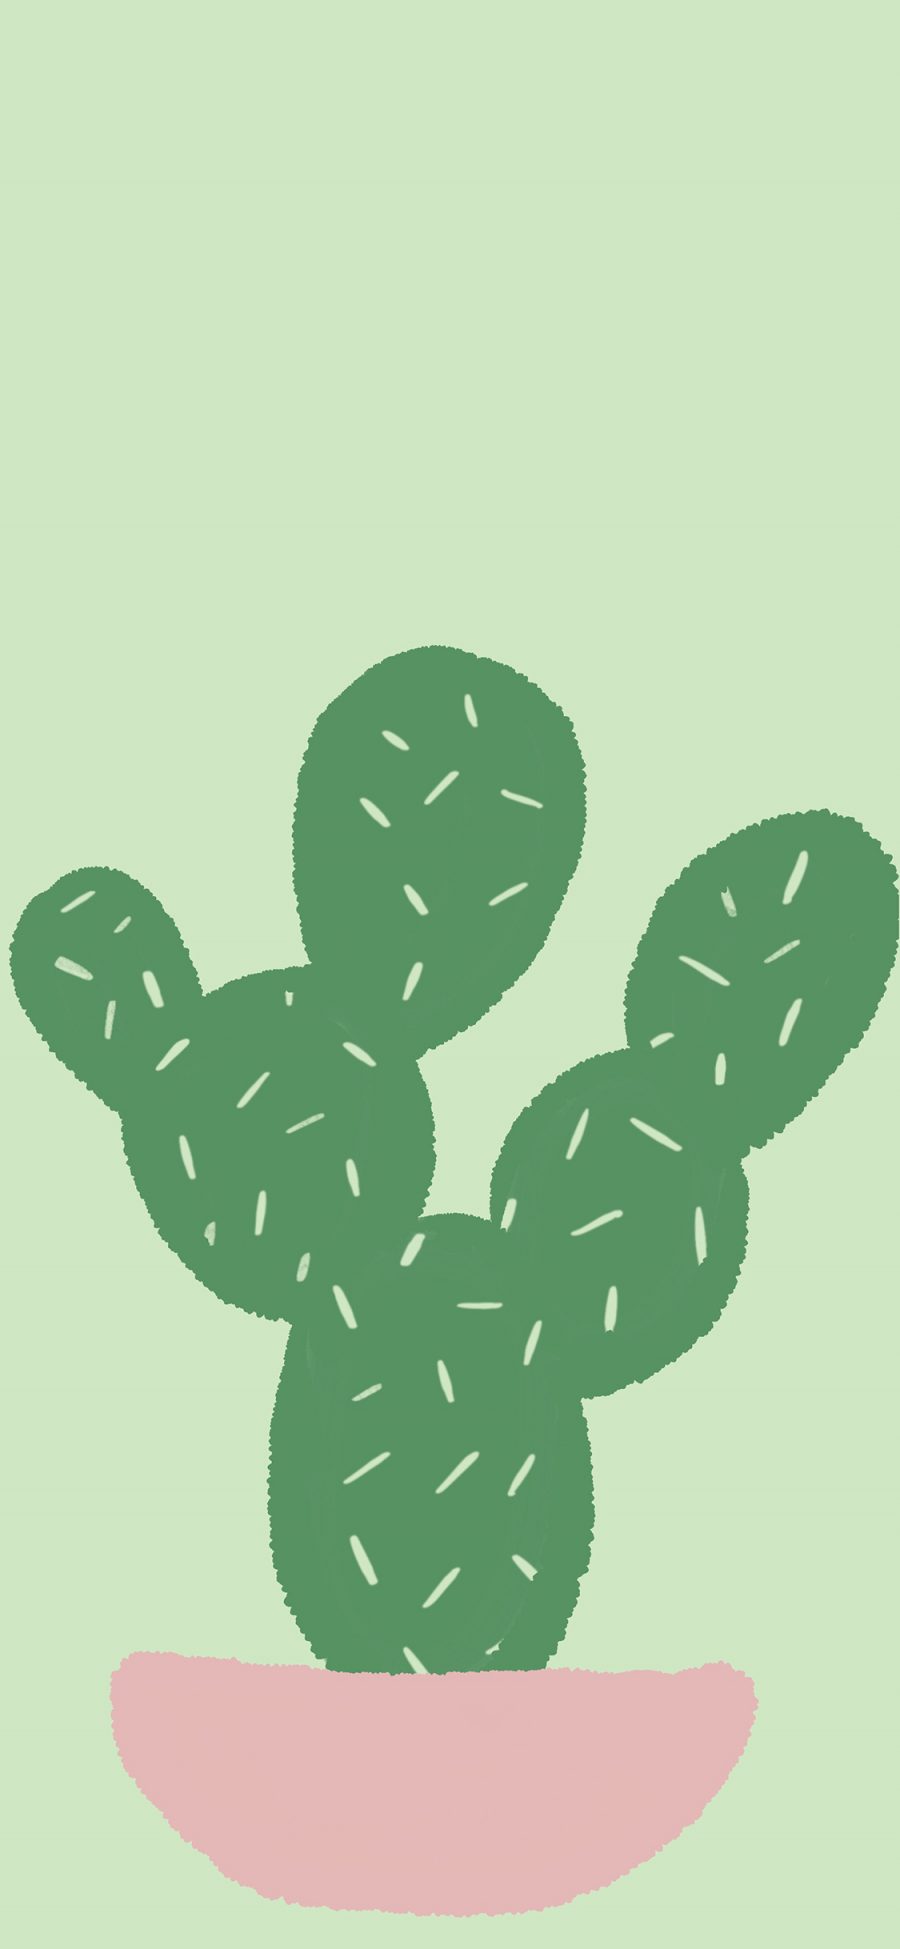 [2436×1125]插图 绿色 仙人掌 卡通 苹果手机动漫壁纸图片